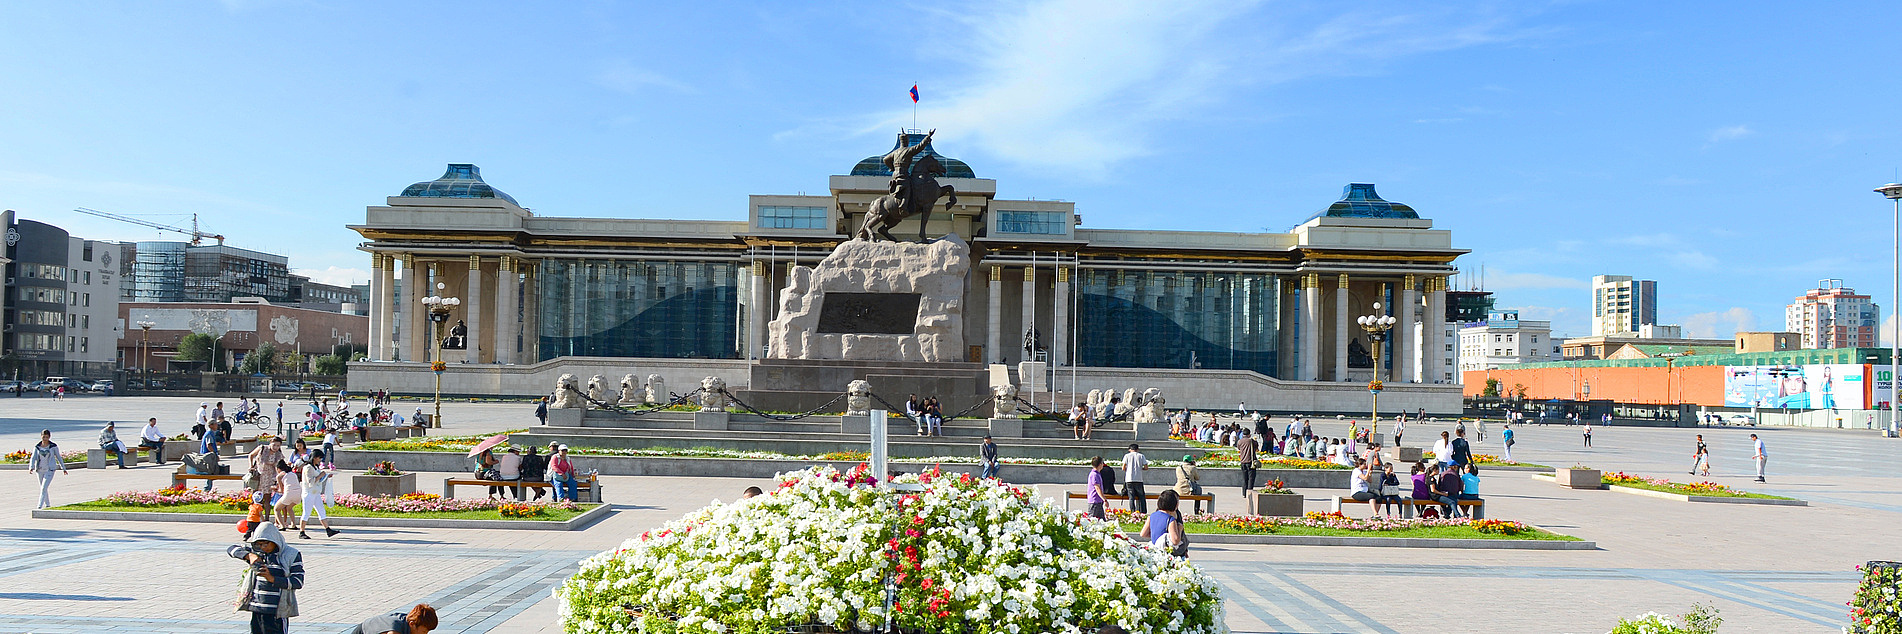 Berühmter Platz mit Damdin Sukhbaatar Statue in Ulaanbaatar, Mongolei